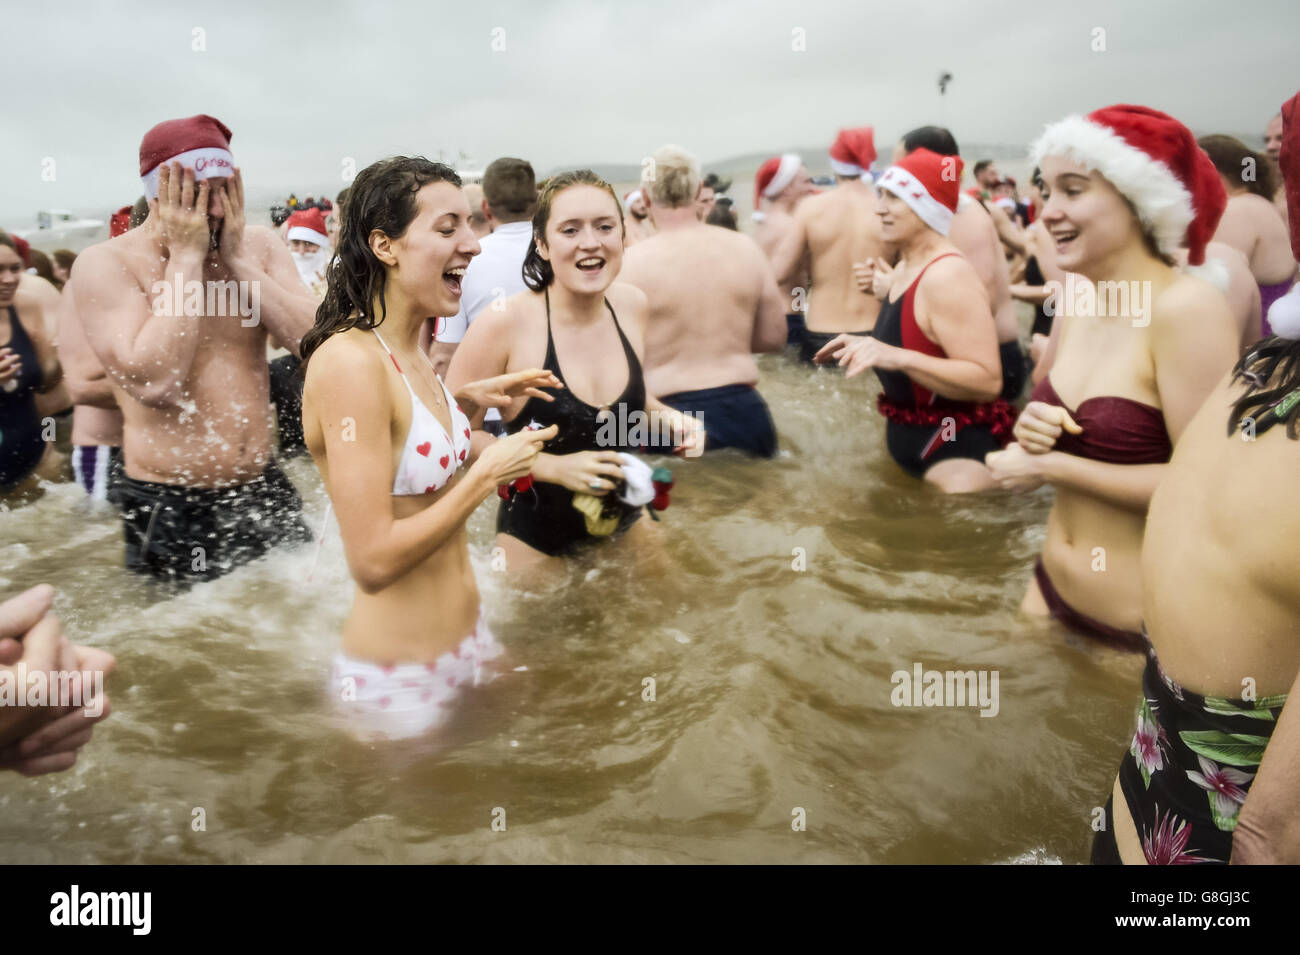 Am Exmouth Beach, Devon, nehmen die Menschen am jährlichen Exmouth Christmas Day Schwimmen Teil. Stockfoto